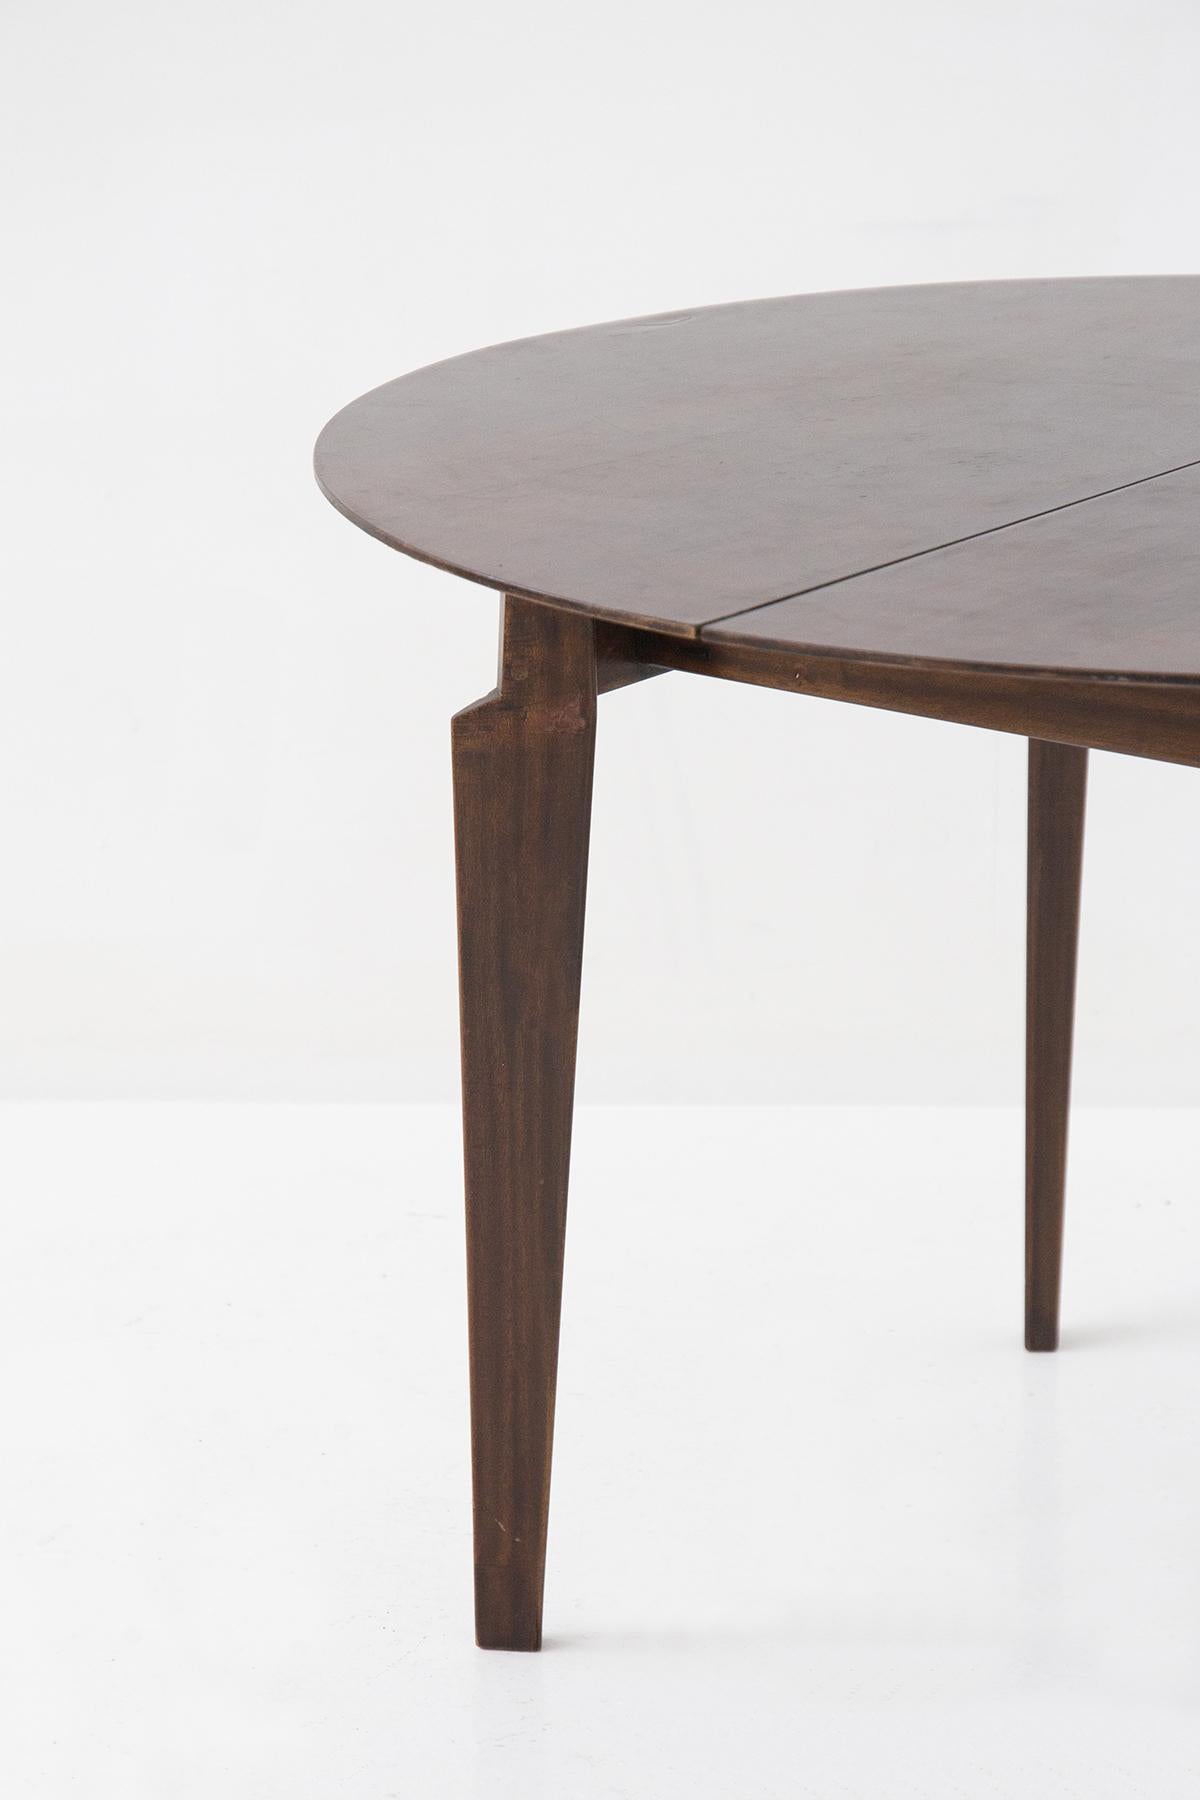 Schöner runder Tisch der italienischen Manufaktur Dassi aus den 1950er Jahren, entworfen von Edmundo Palutari.
Der Tisch ist komplett aus dunkelbraunem Holz gefertigt, sehr elegant. Es gibt 4 Stützbeine in dreieckiger Form, die sehr markant und